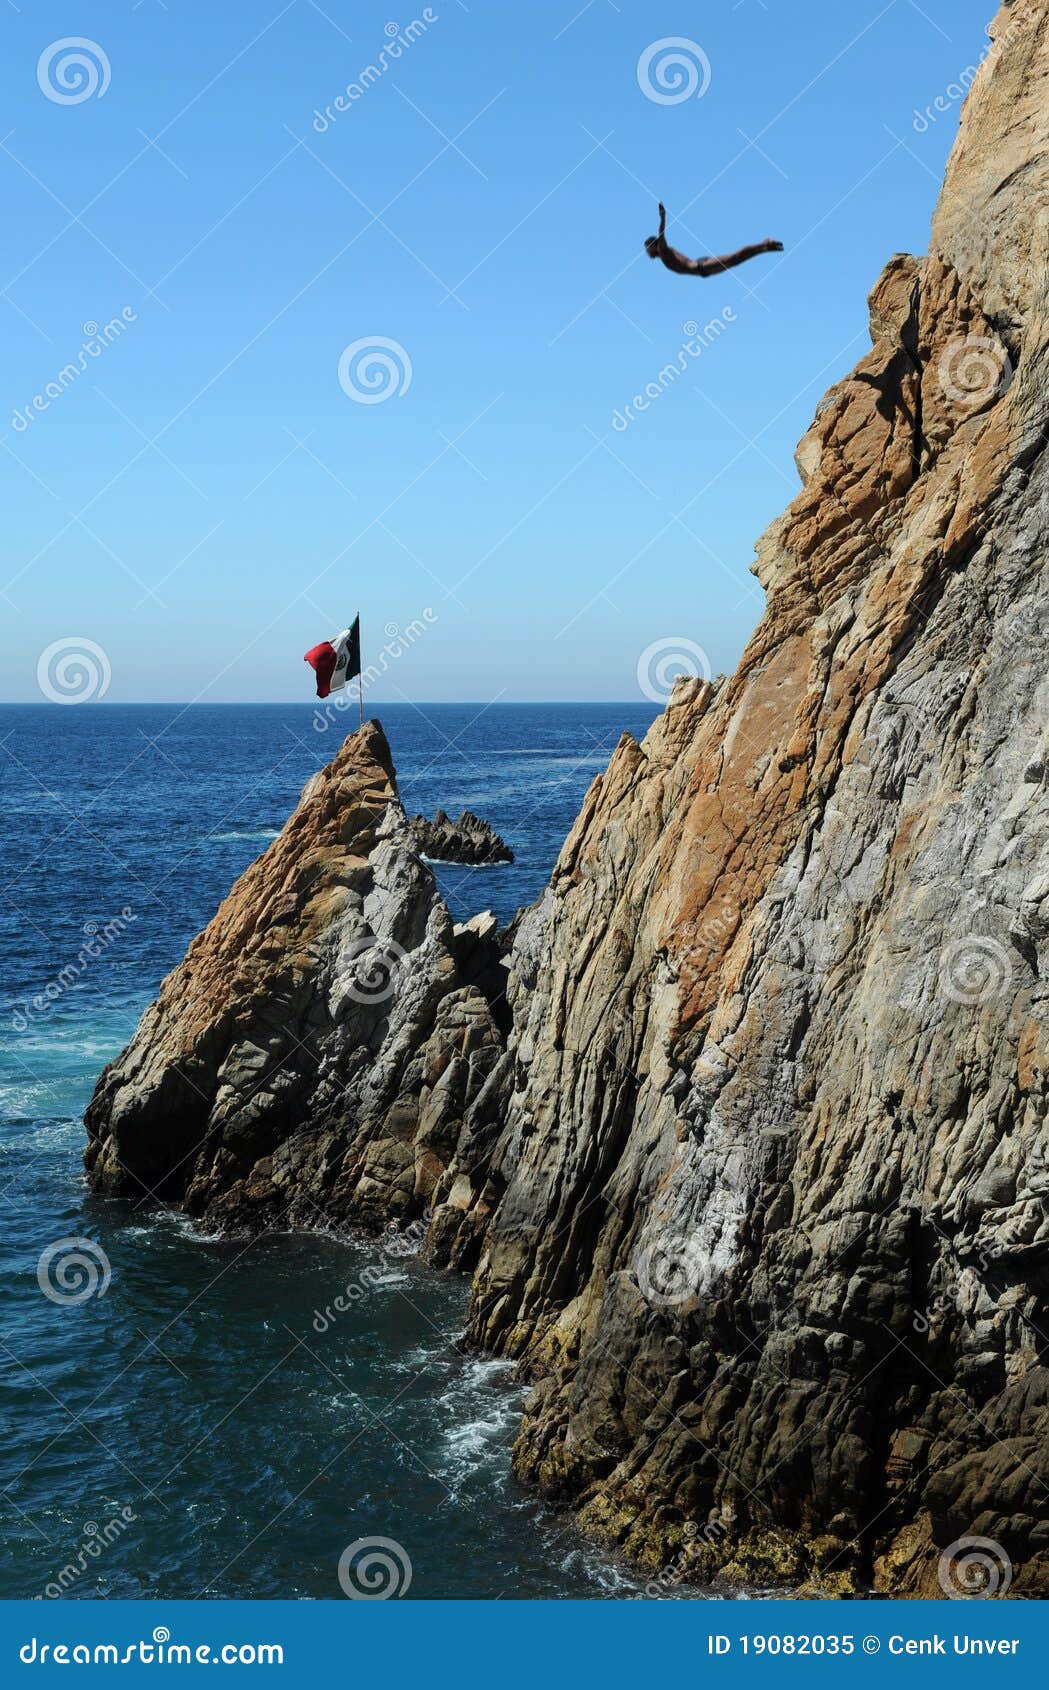 acapulco cliff diver